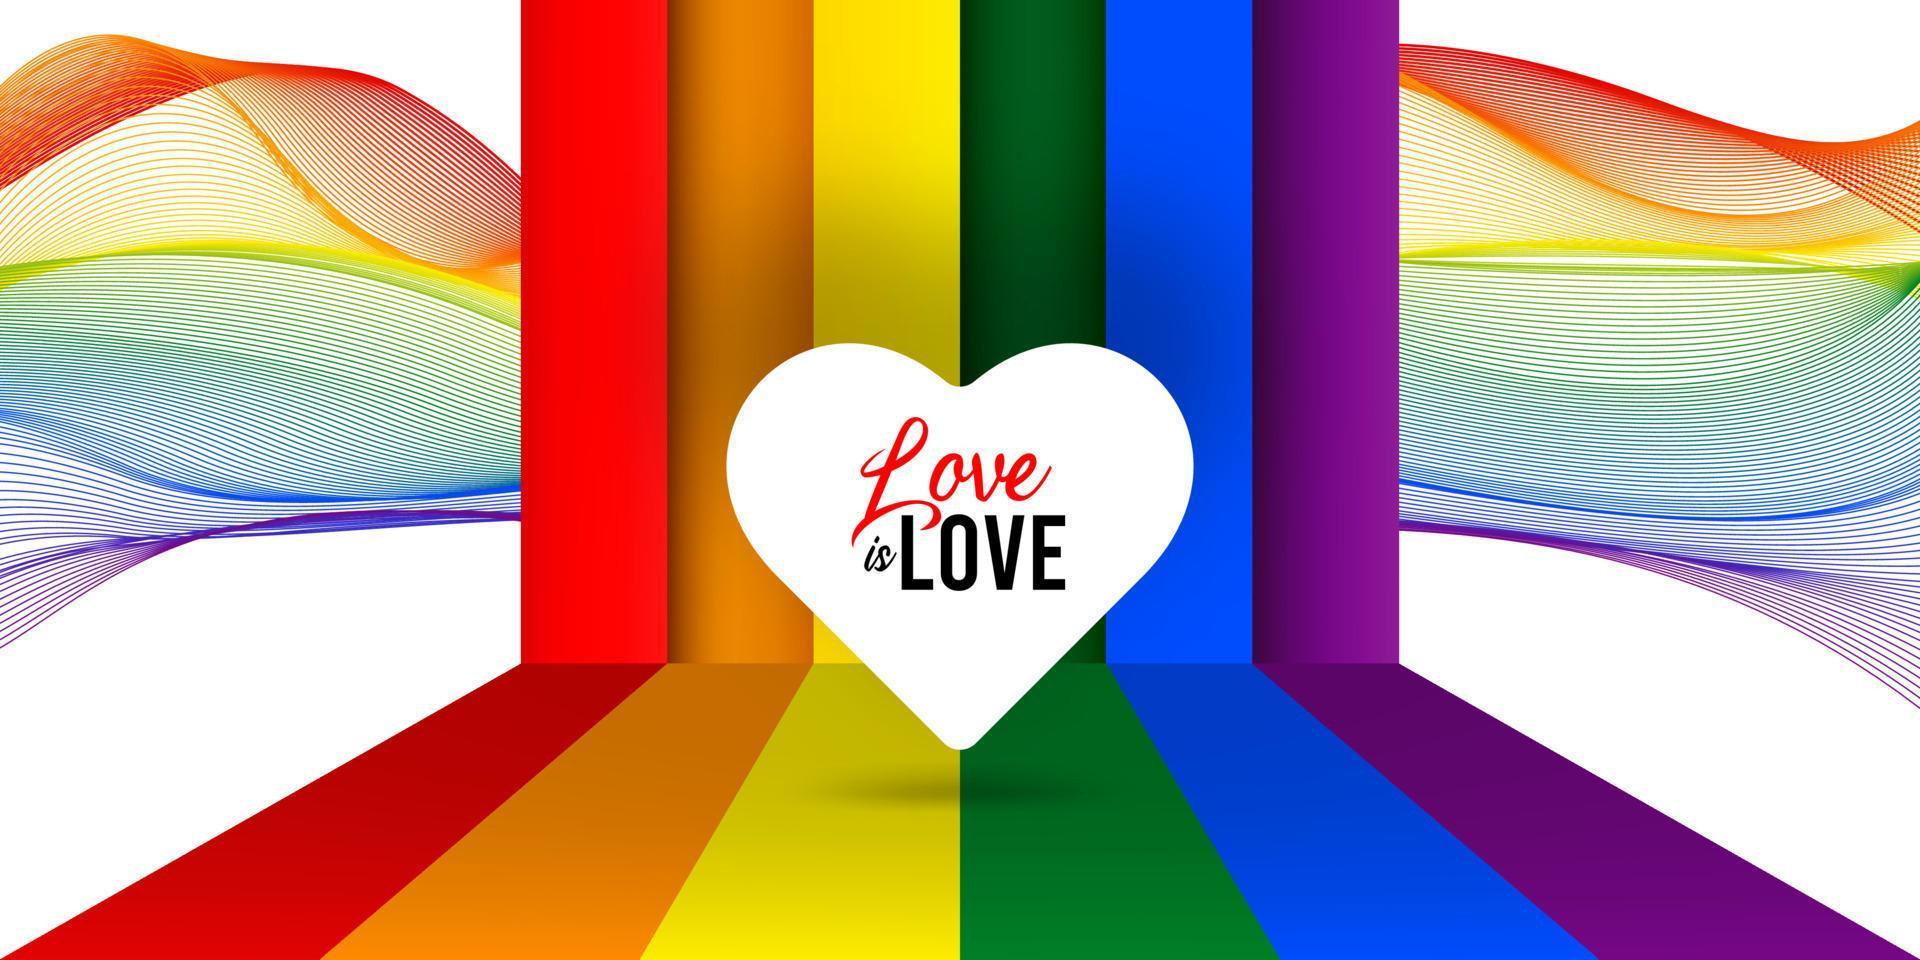 felice orgoglio amore è amore banner illustrazione con cuore bianco sul palco arcobaleno vettore